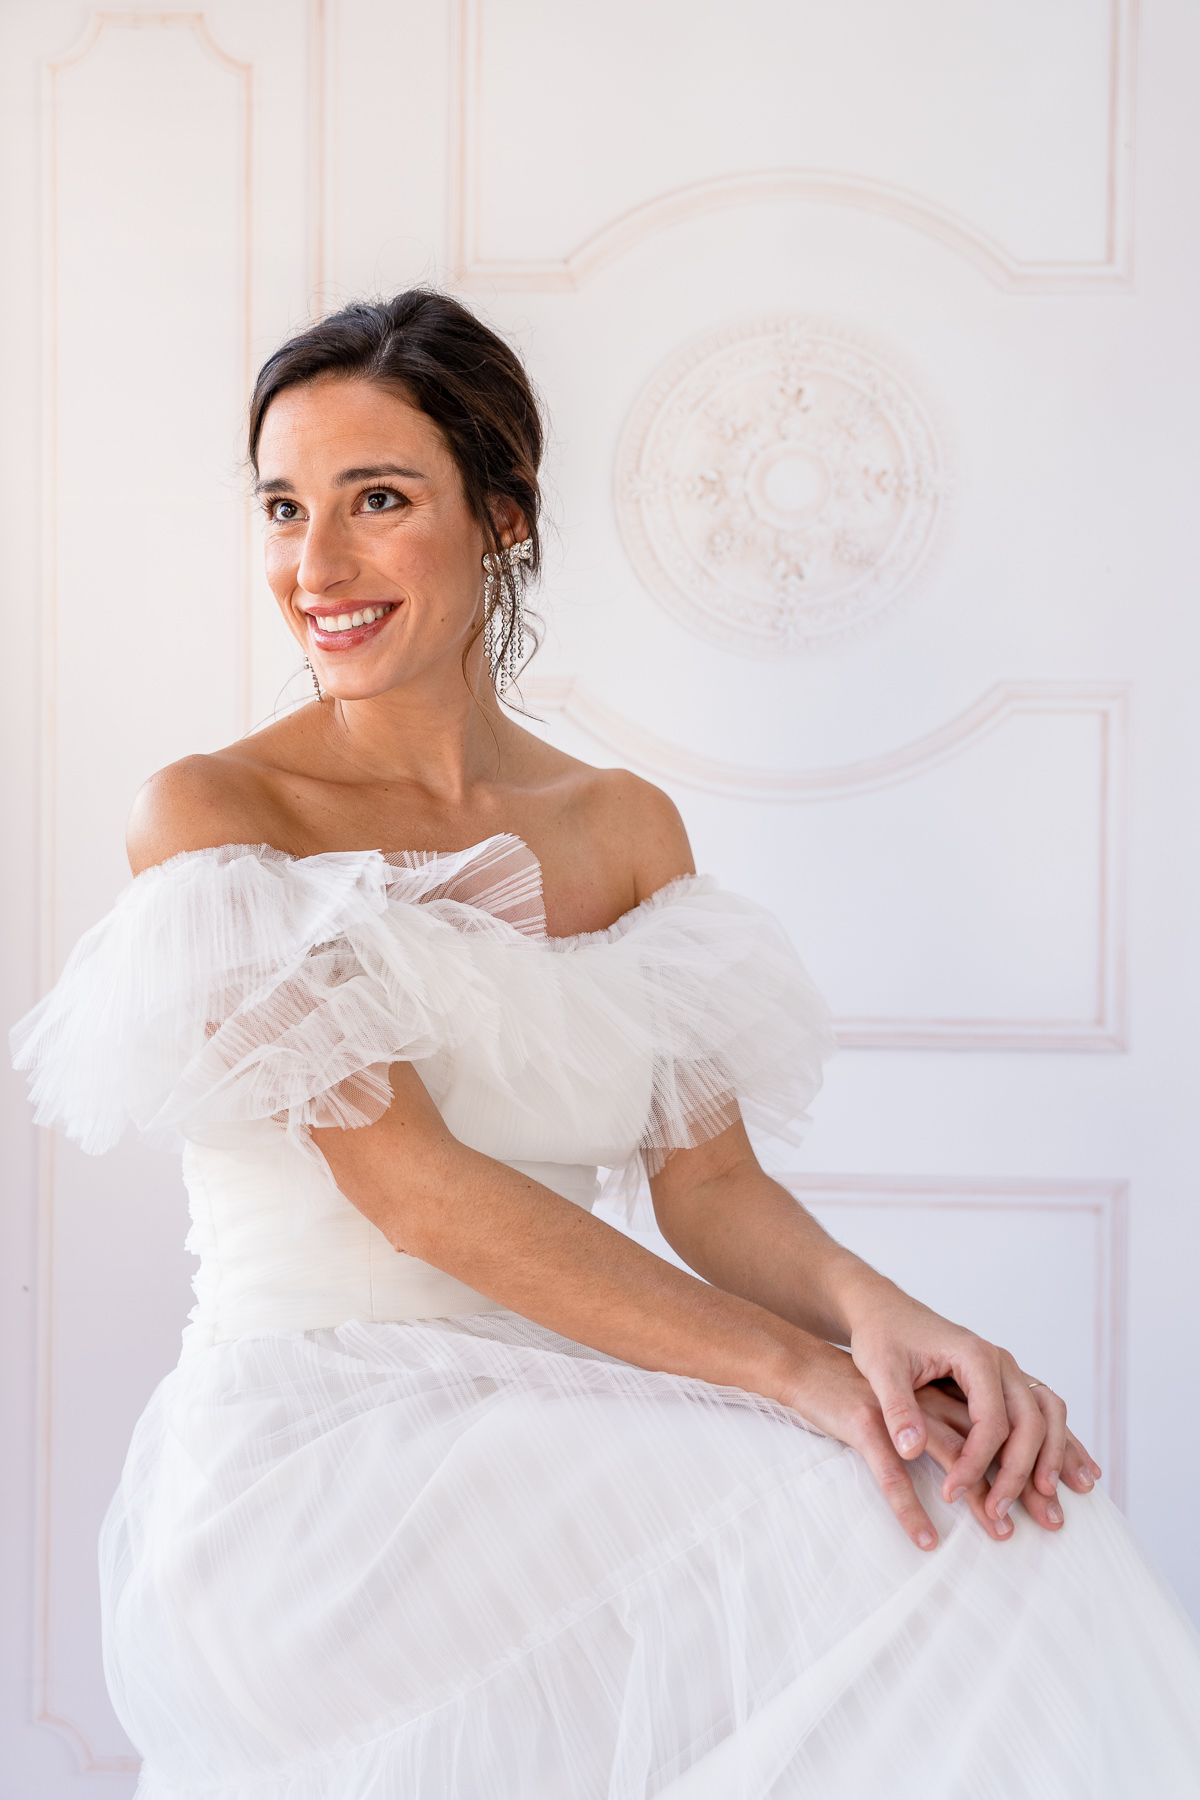 beatriz-alvaro-vestido de novia-atellier-madrid-a medida-diseñadora-tendendencias-tul- pliumetti-volantes-